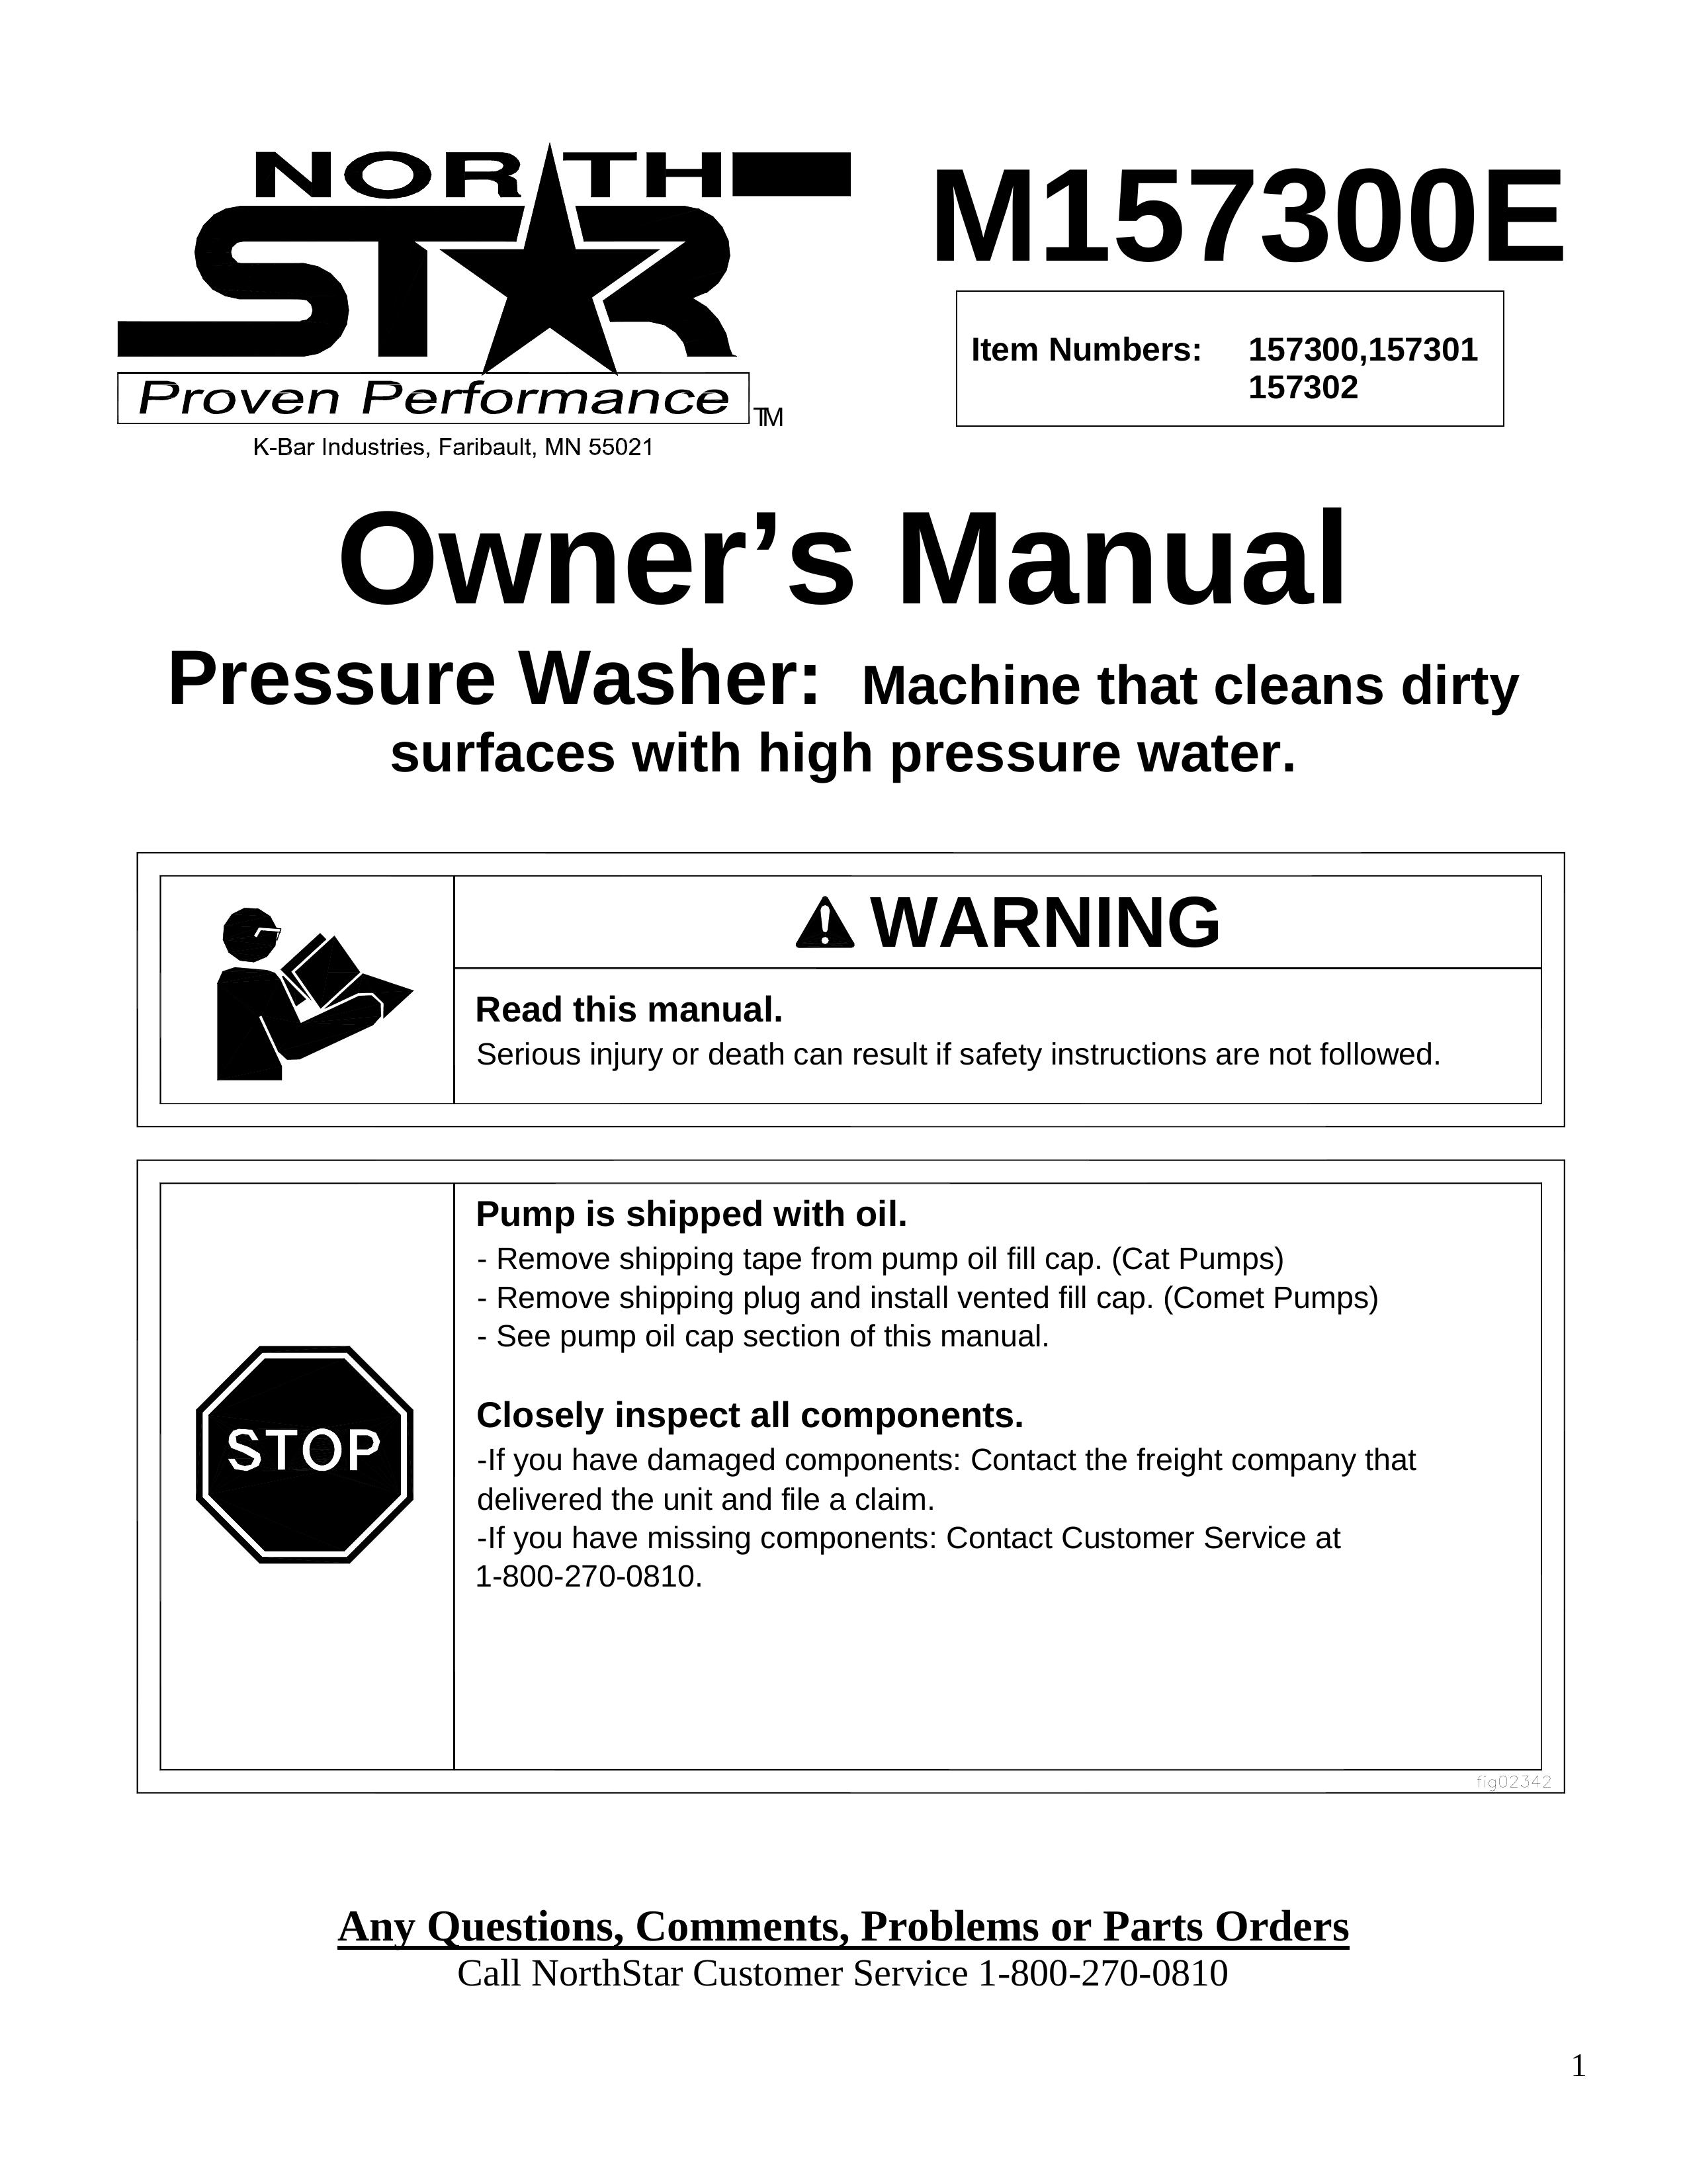 North Star M157300E Pressure Washer User Manual